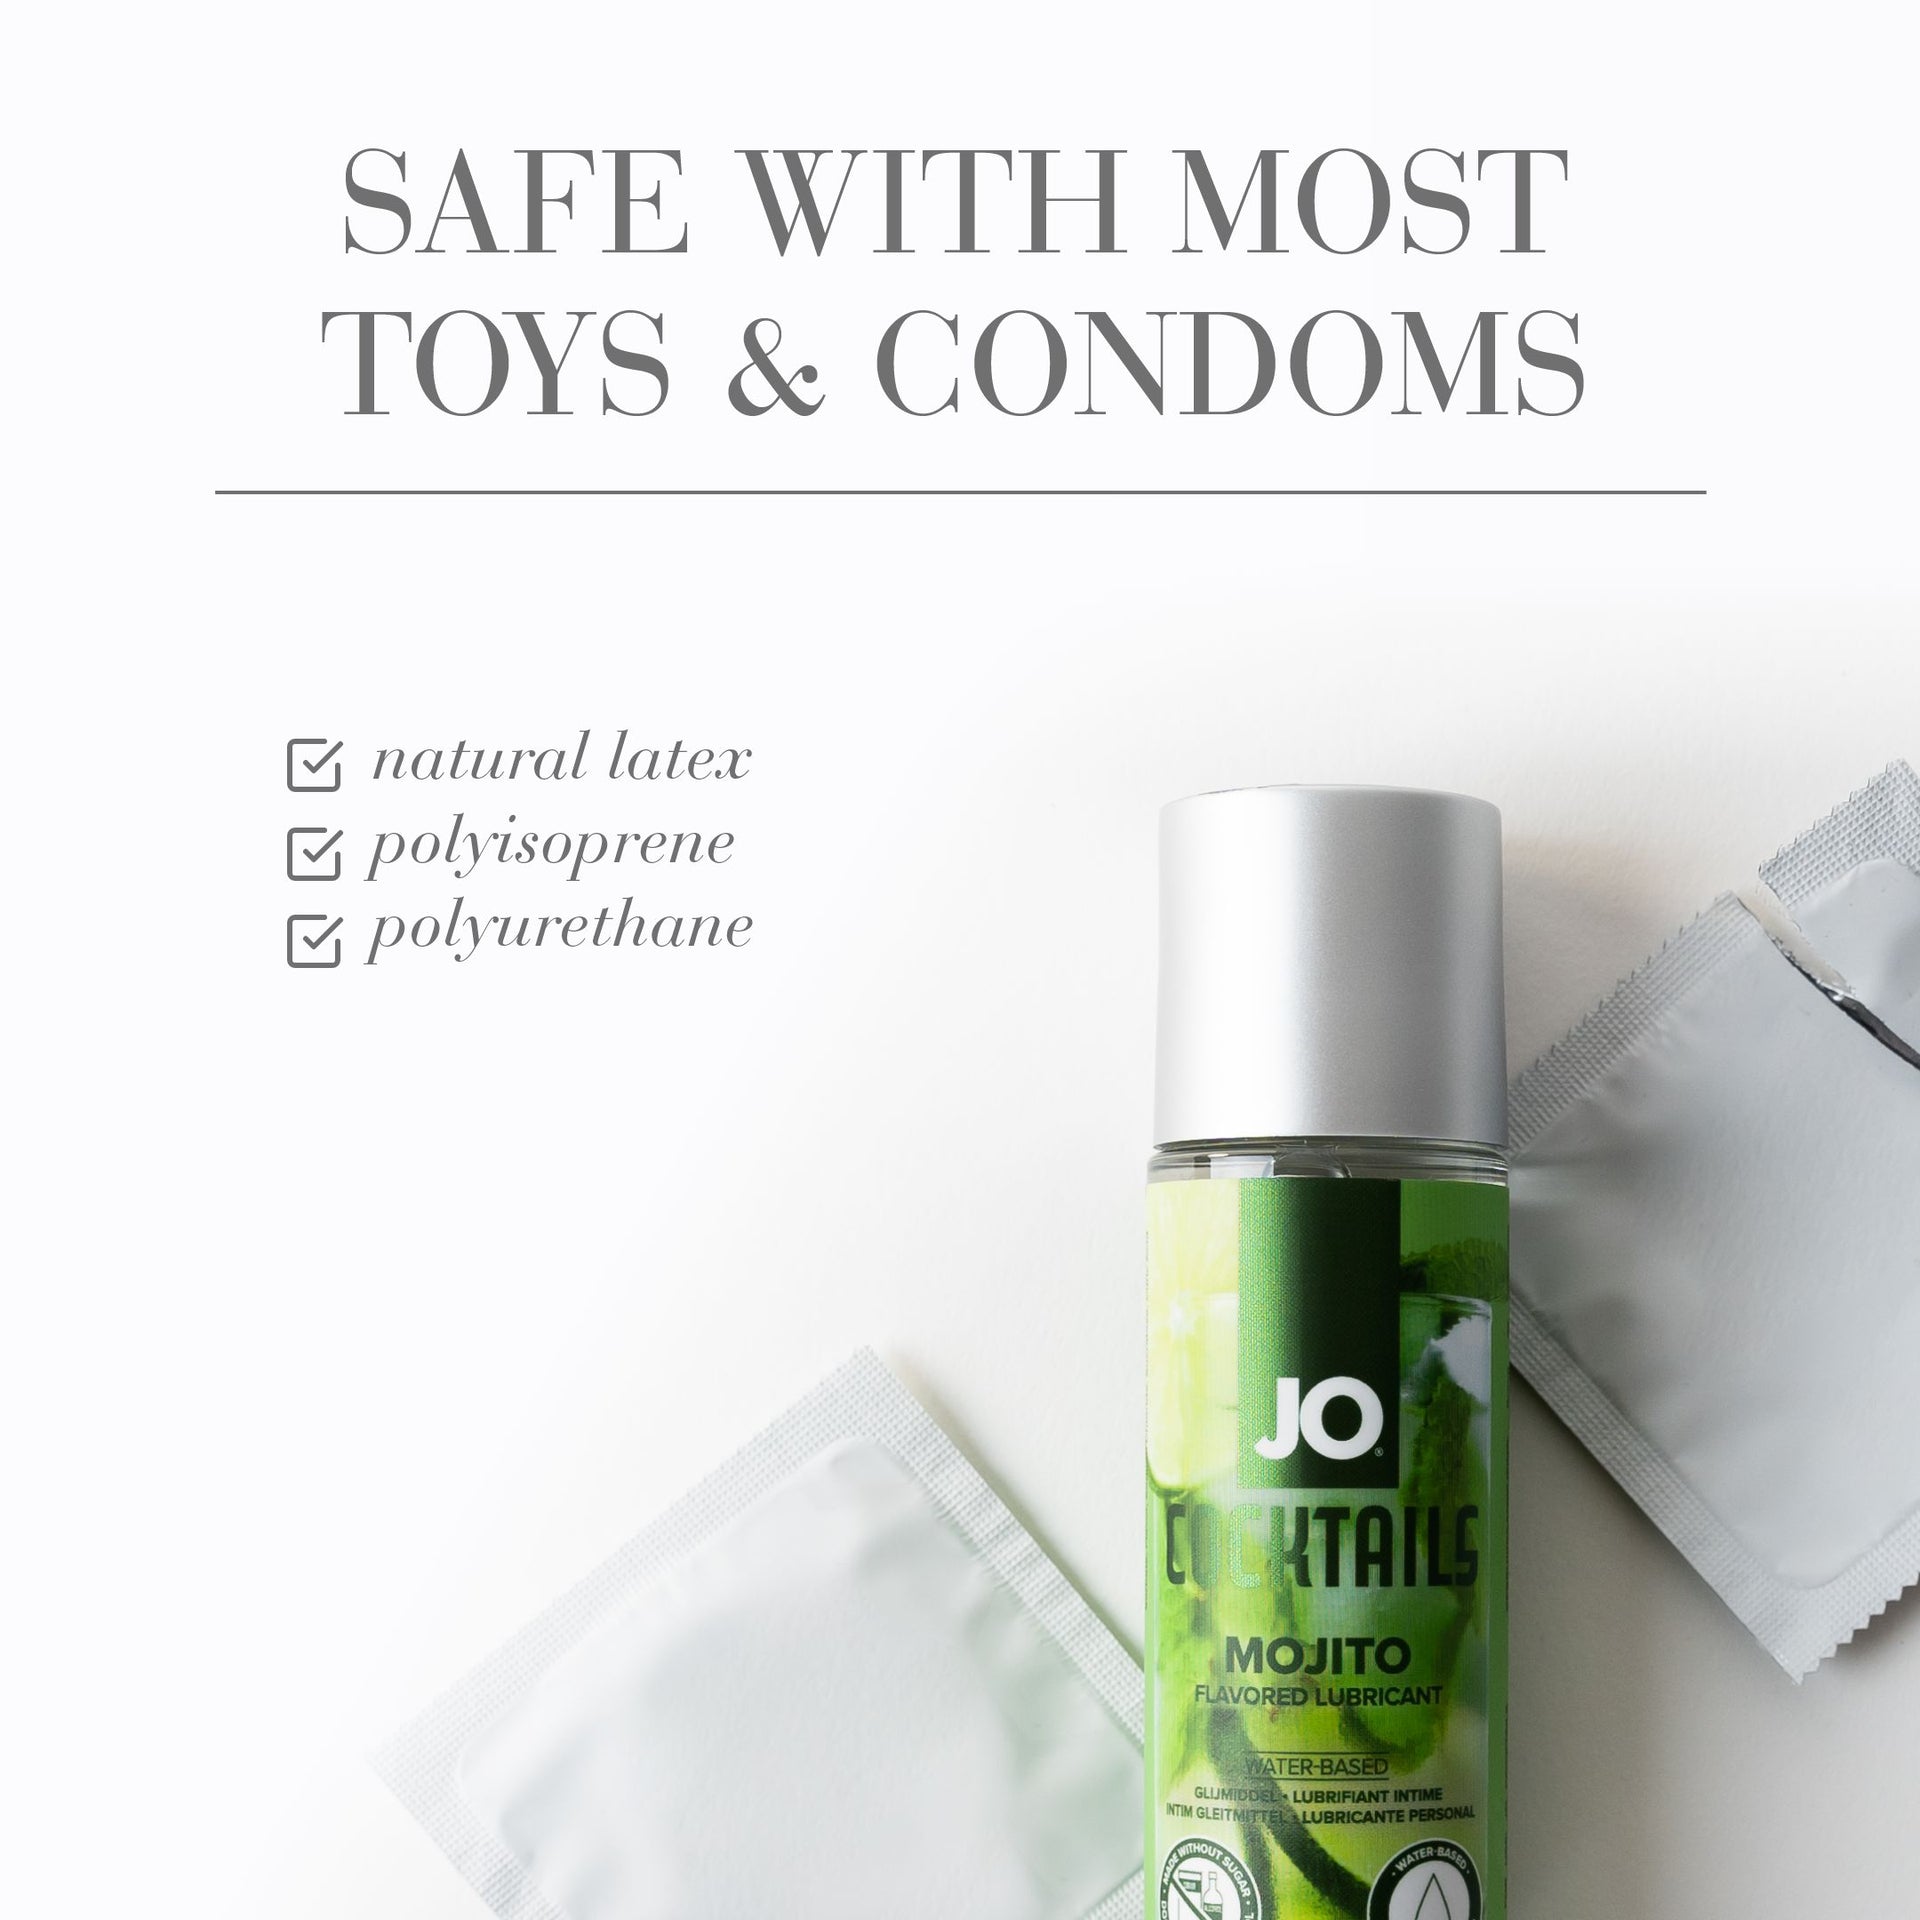 mojito flavored lubricant condom compatible